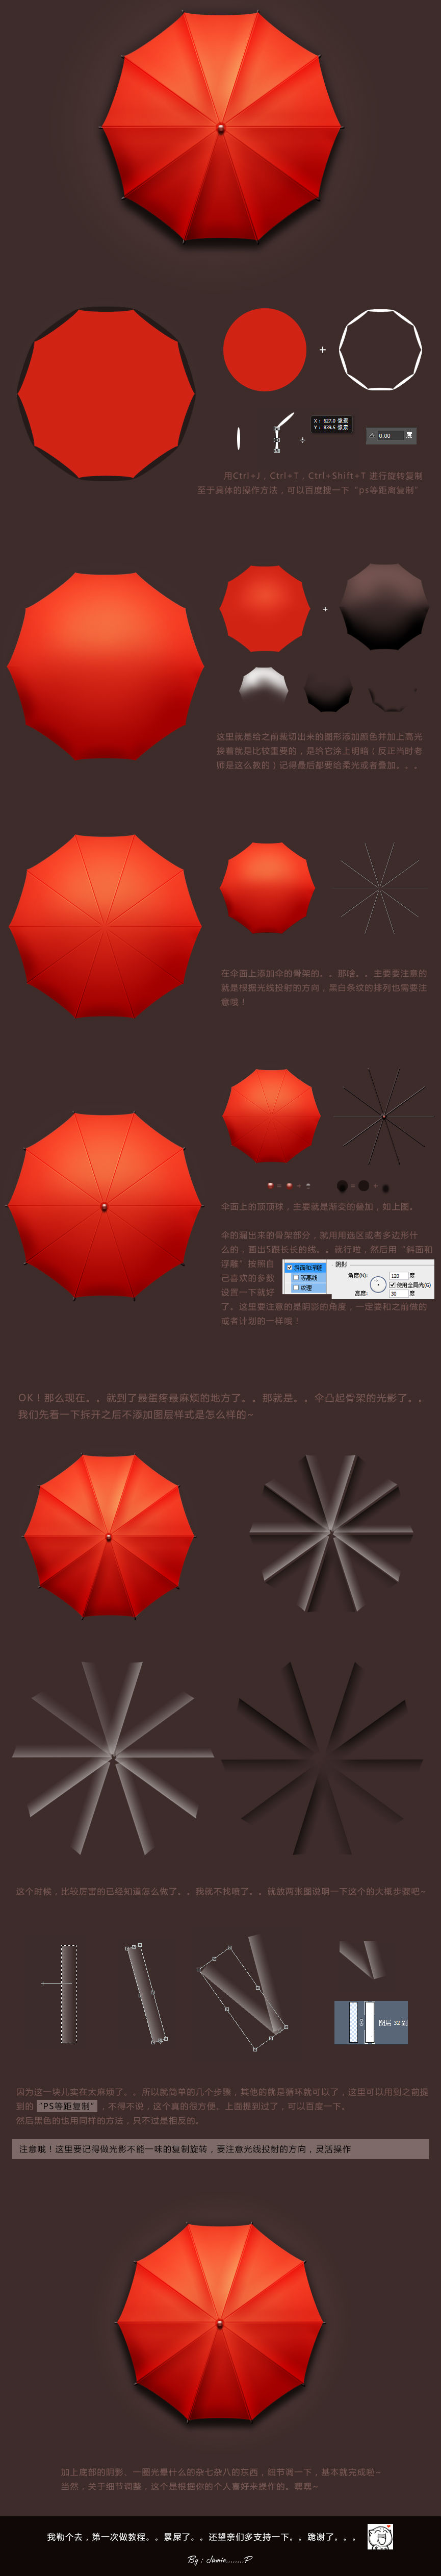 PS绘制一枚质感小红伞GUI图标制作教程1